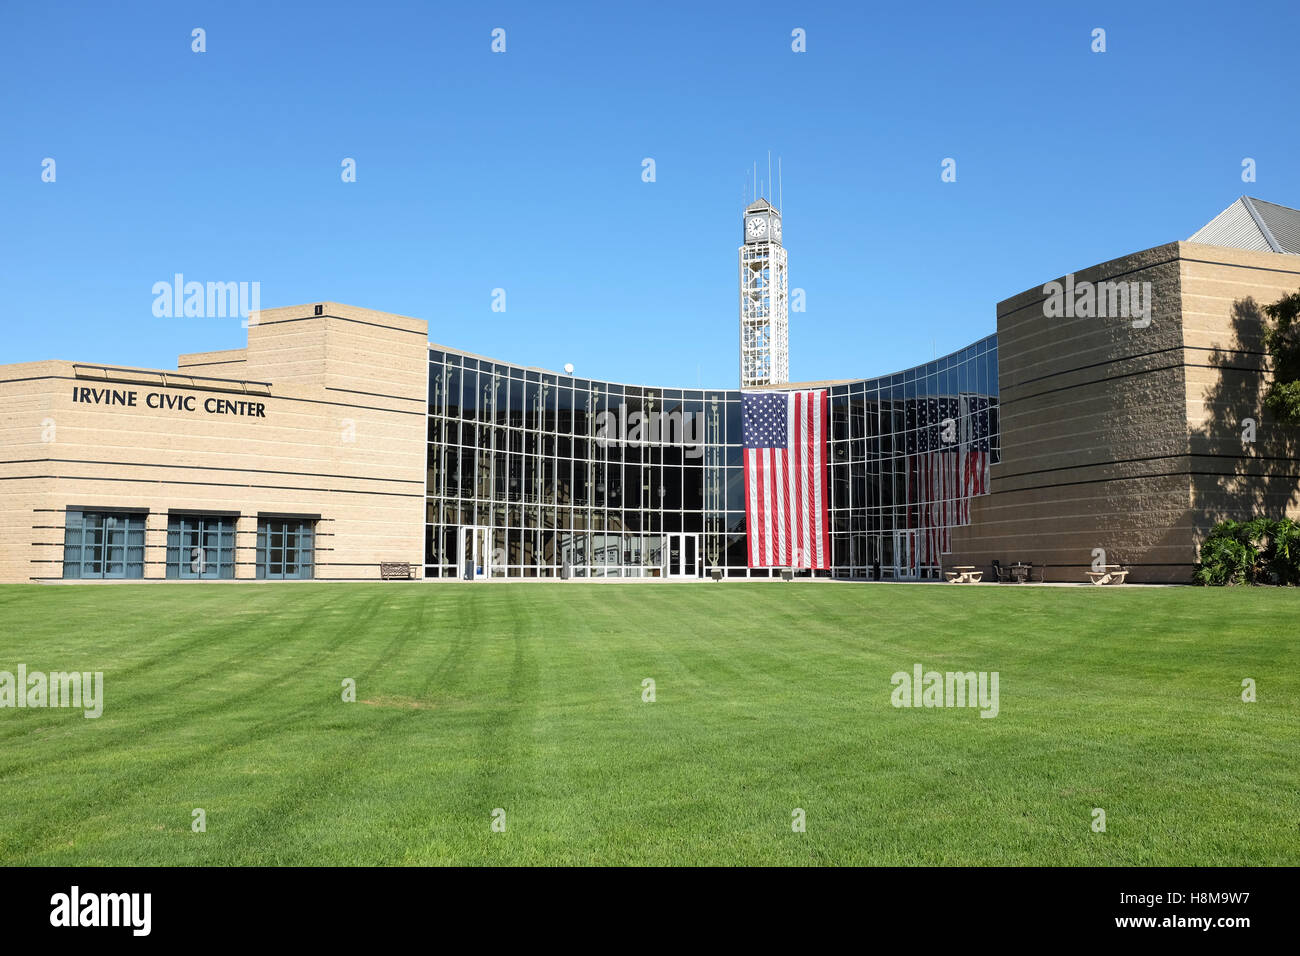 L'Irvine Civic Center avec un grand drapeau américain à travers le visage drapé de l'édifice en l'honneur des anciens combattants 24. Banque D'Images